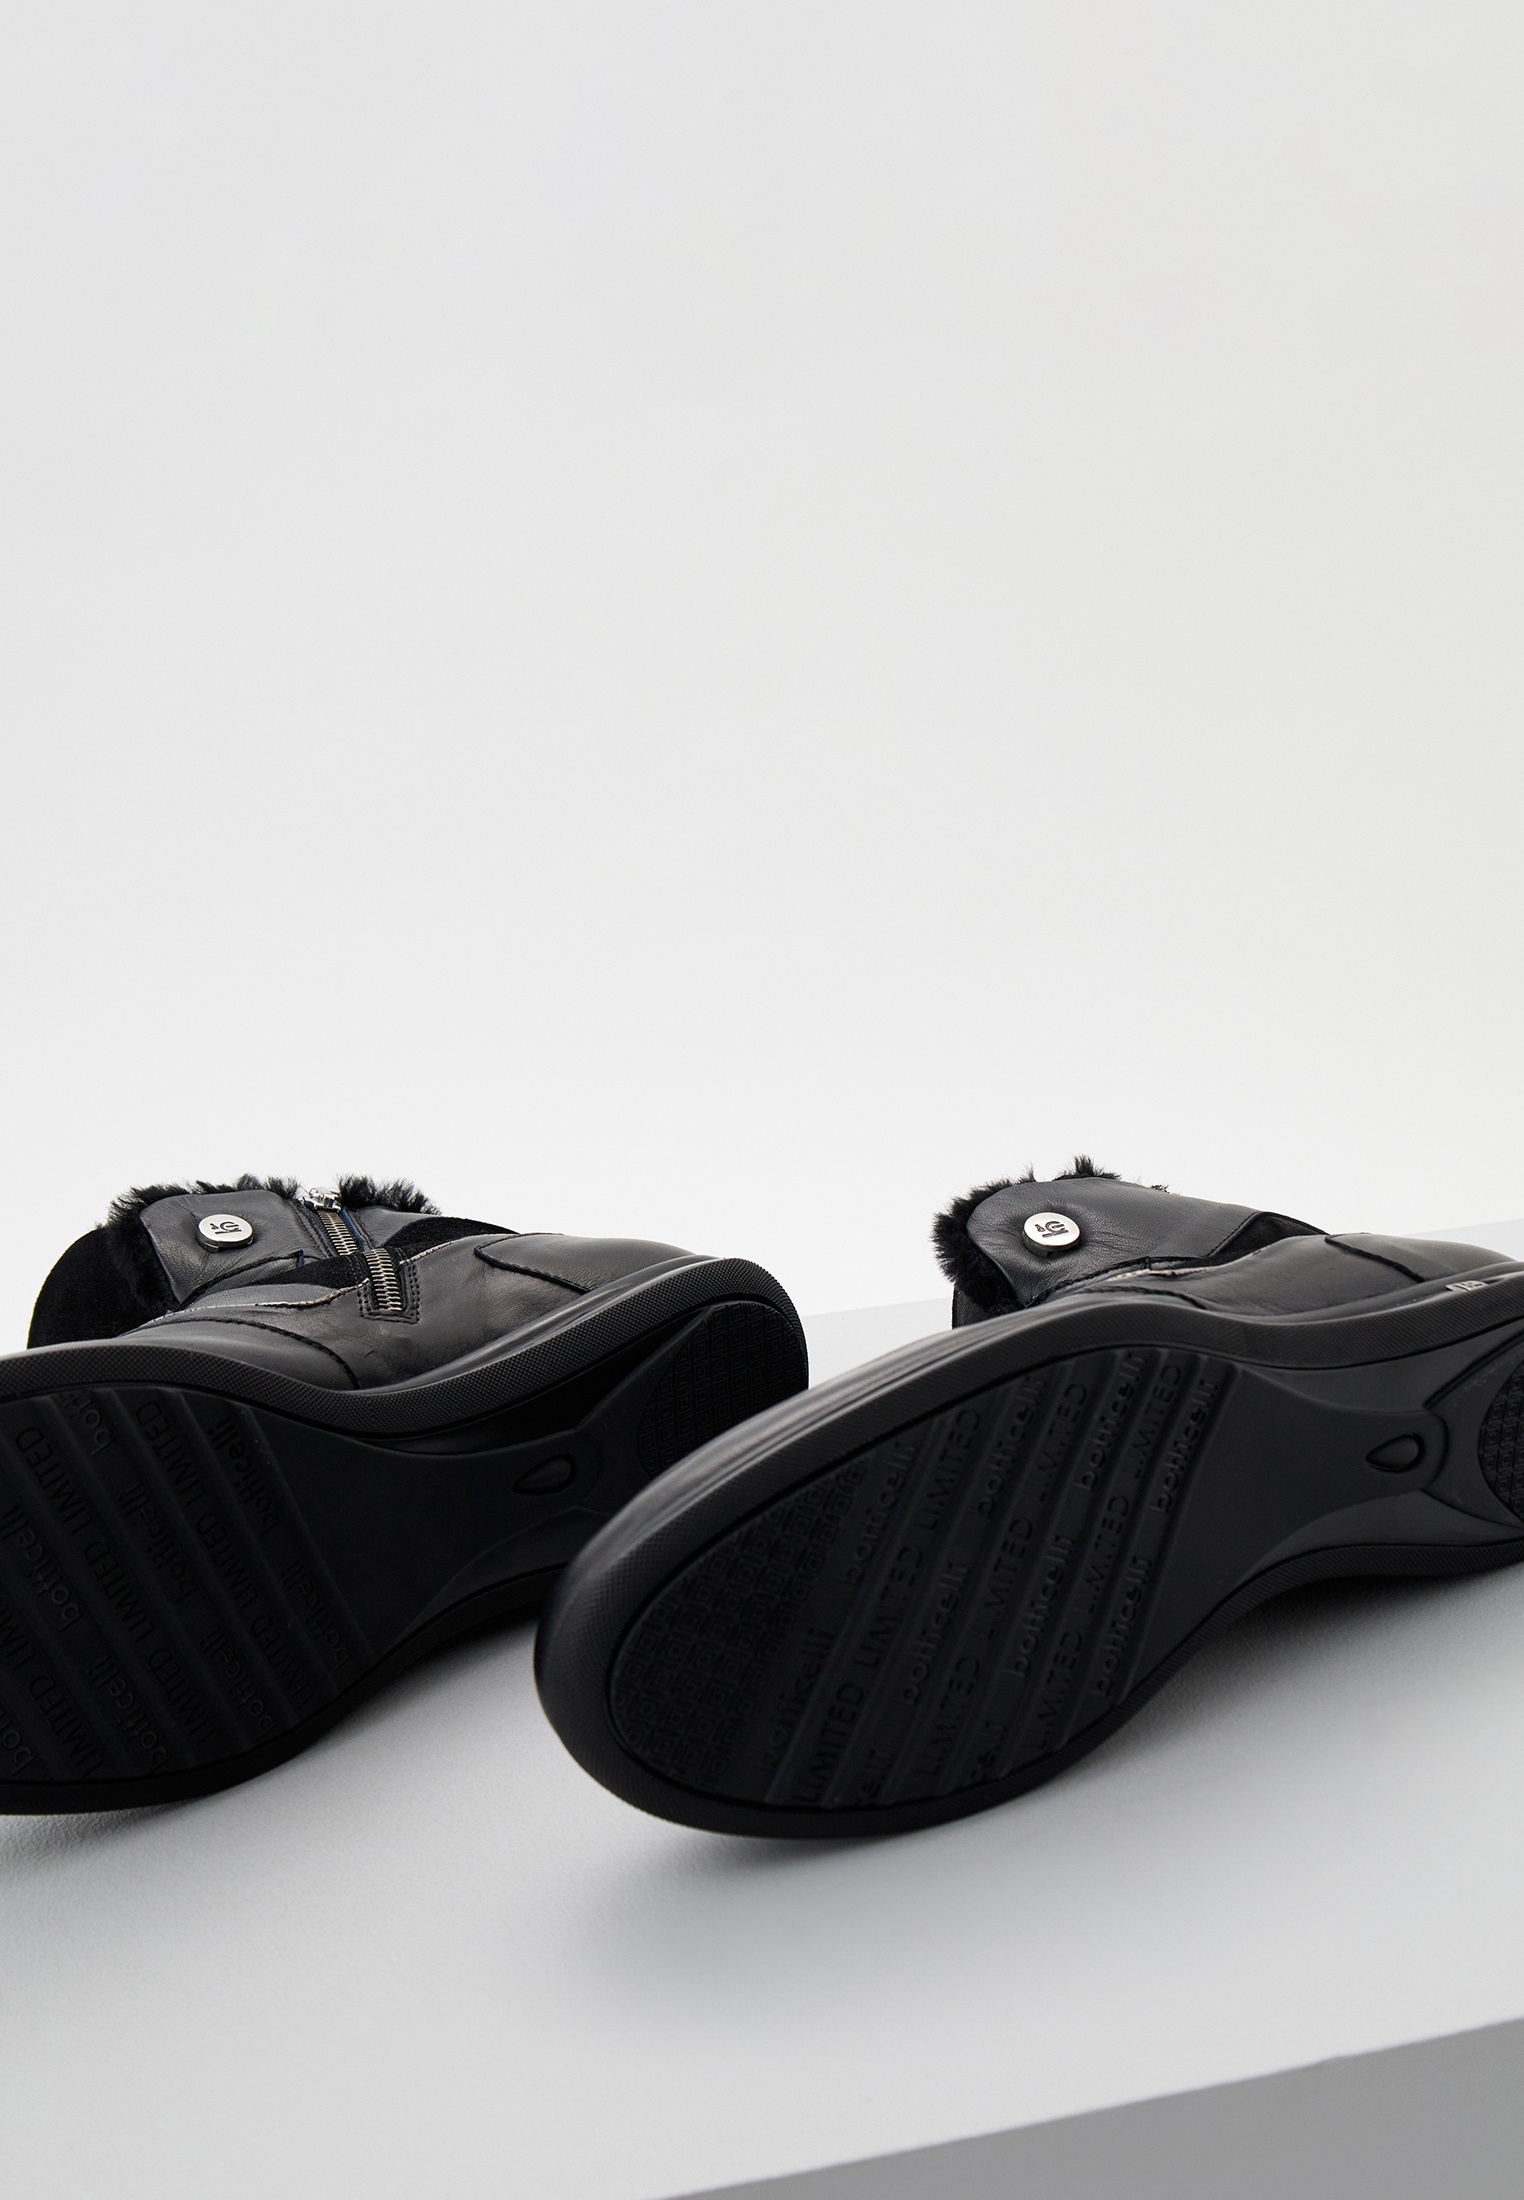 Ботинки Roberto Botticelli, цвет: черный, RTLACX334701 — купить в  интернет-магазине Lamoda